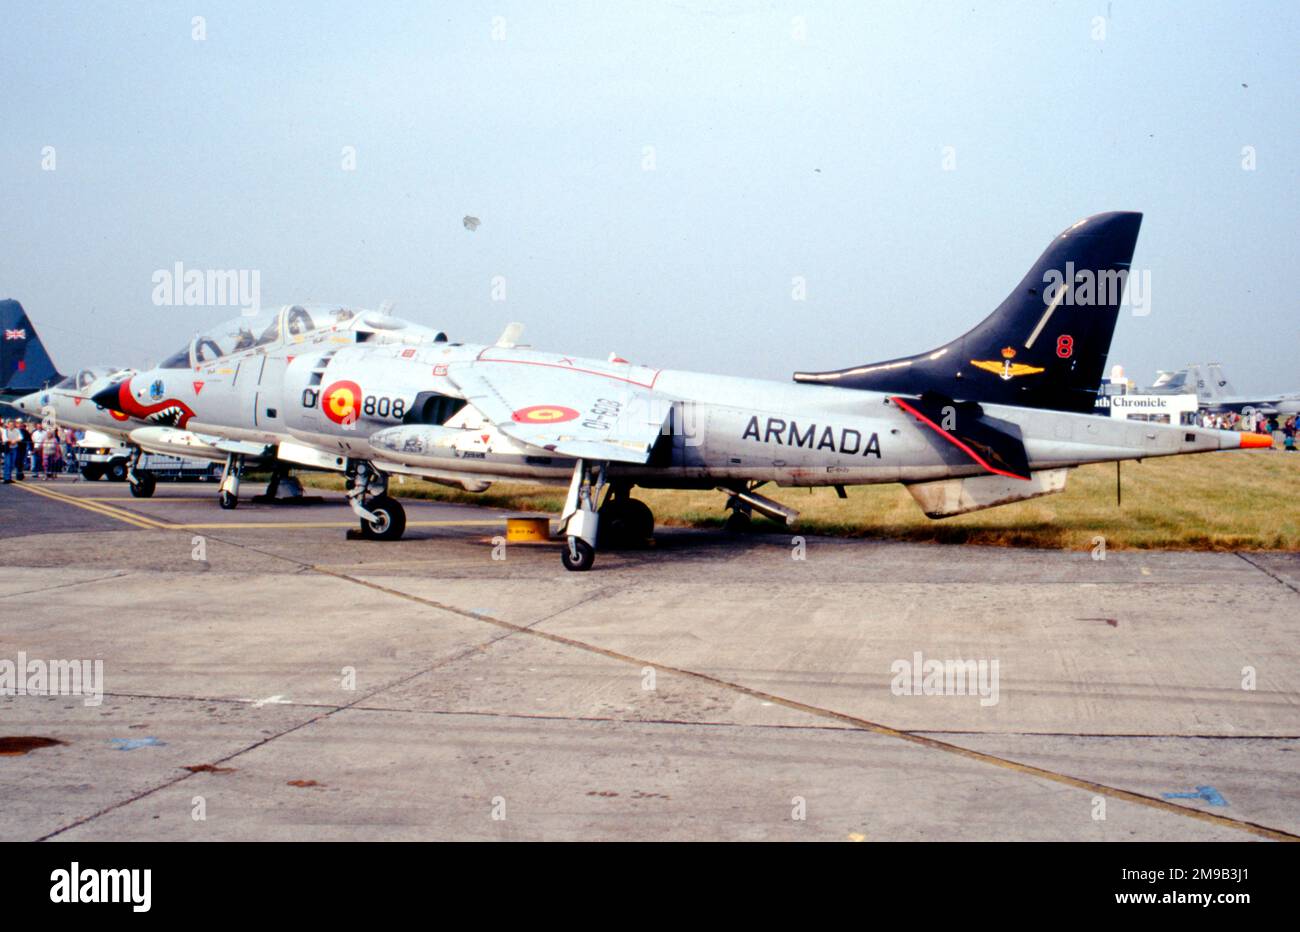 Armada Espanola - Hawker Siddeley TAV-8S Matador 01-808 (msn 212030, ex BU 159564), d'Escuadrilla 008, à la RAF Fairford en juillet 1994 pour le Royal International Air Tattoo. . (Armada Espanola - Marine espagnole) Banque D'Images